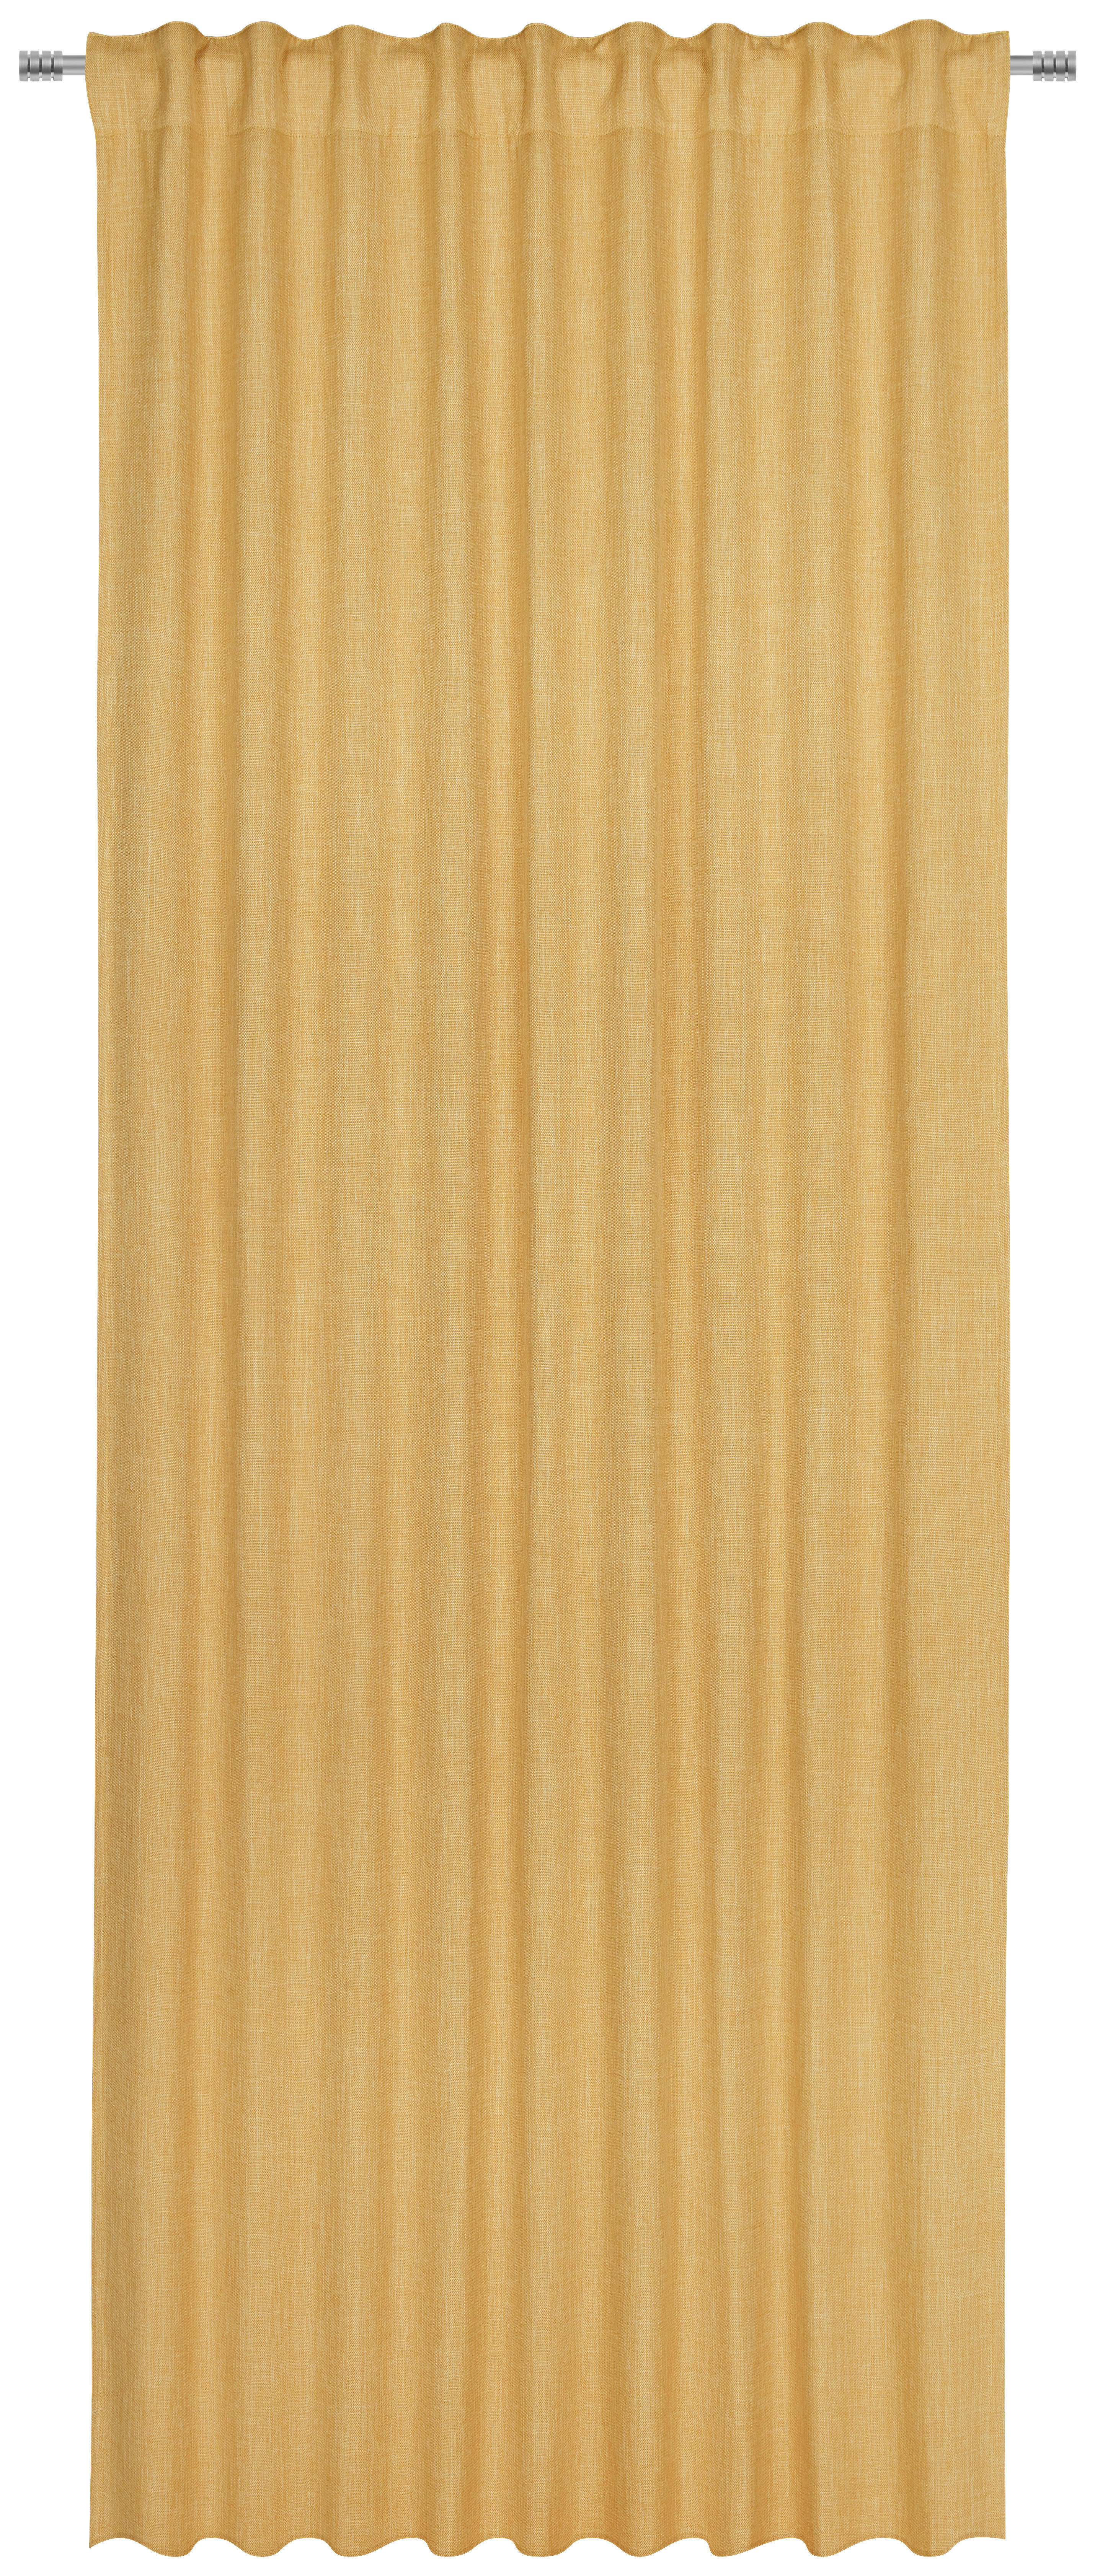 GOTOVA ZAVJESA žuta - žuta, Konvencionalno, tekstil (135/300cm) - Esposa